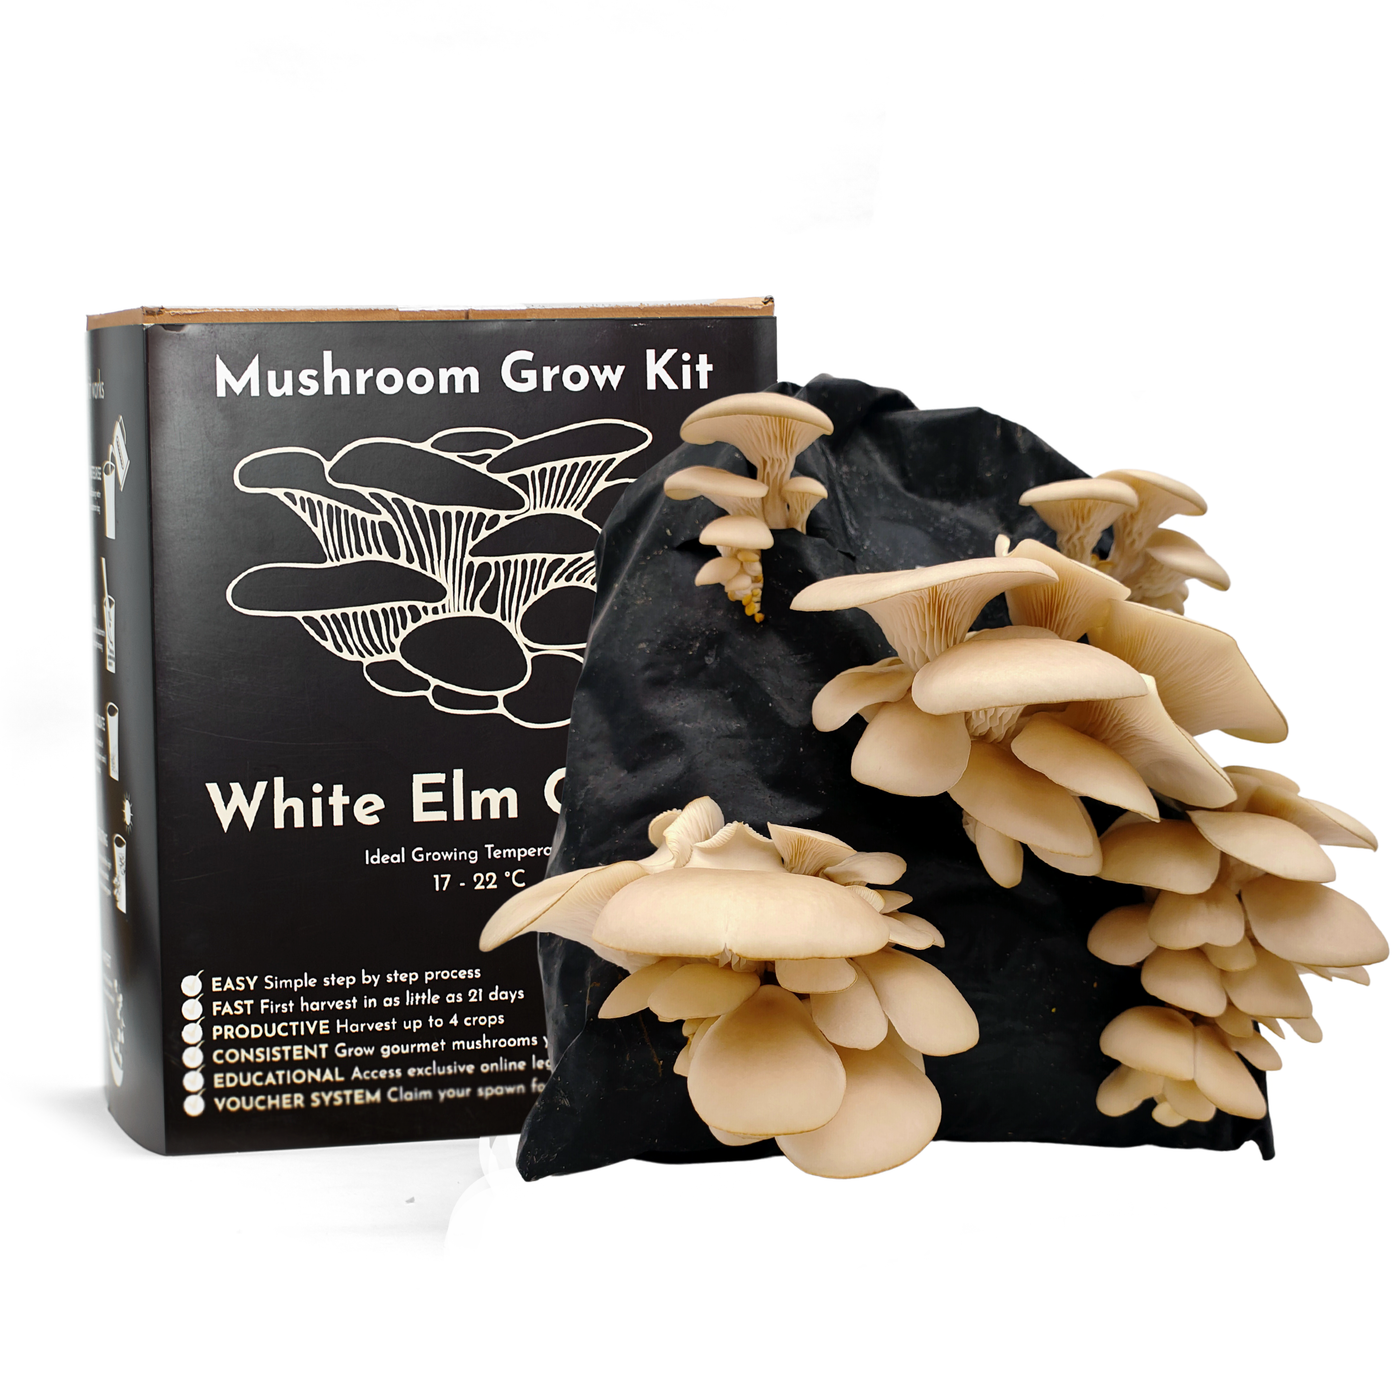 White Elm Oyster Mushroom Growing Kit – Gift Option